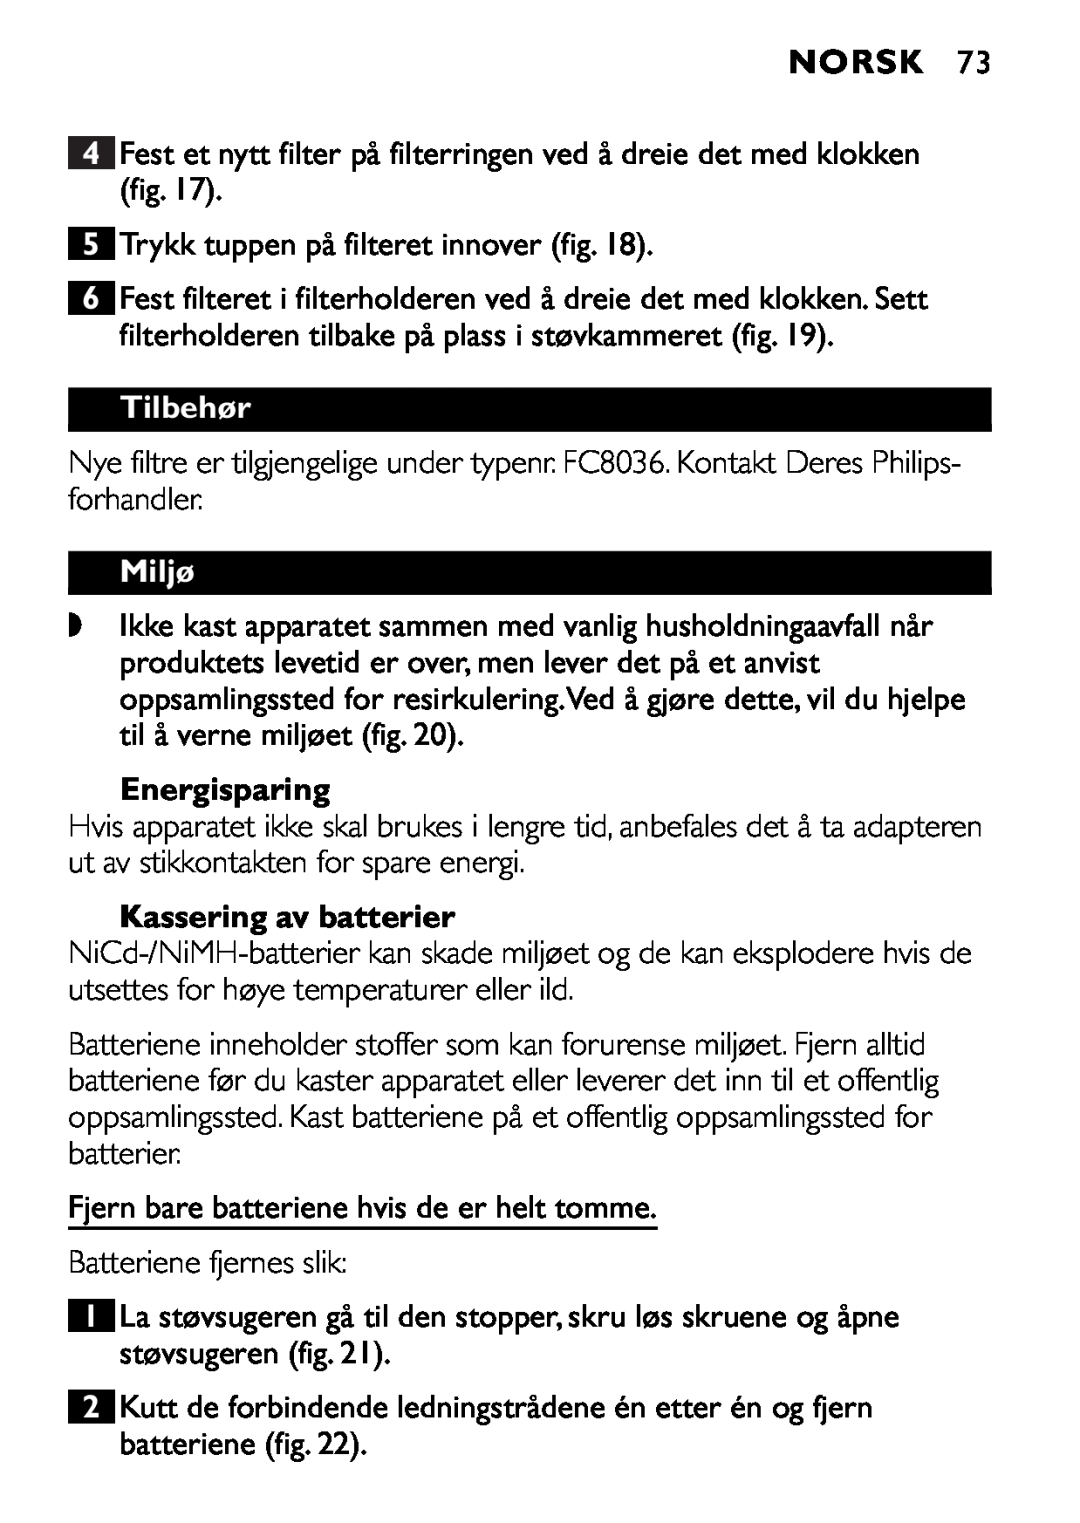 Philips FC6055 manual Tilbehør, Miljø, Energisparing, Kassering av batterier, Norsk 